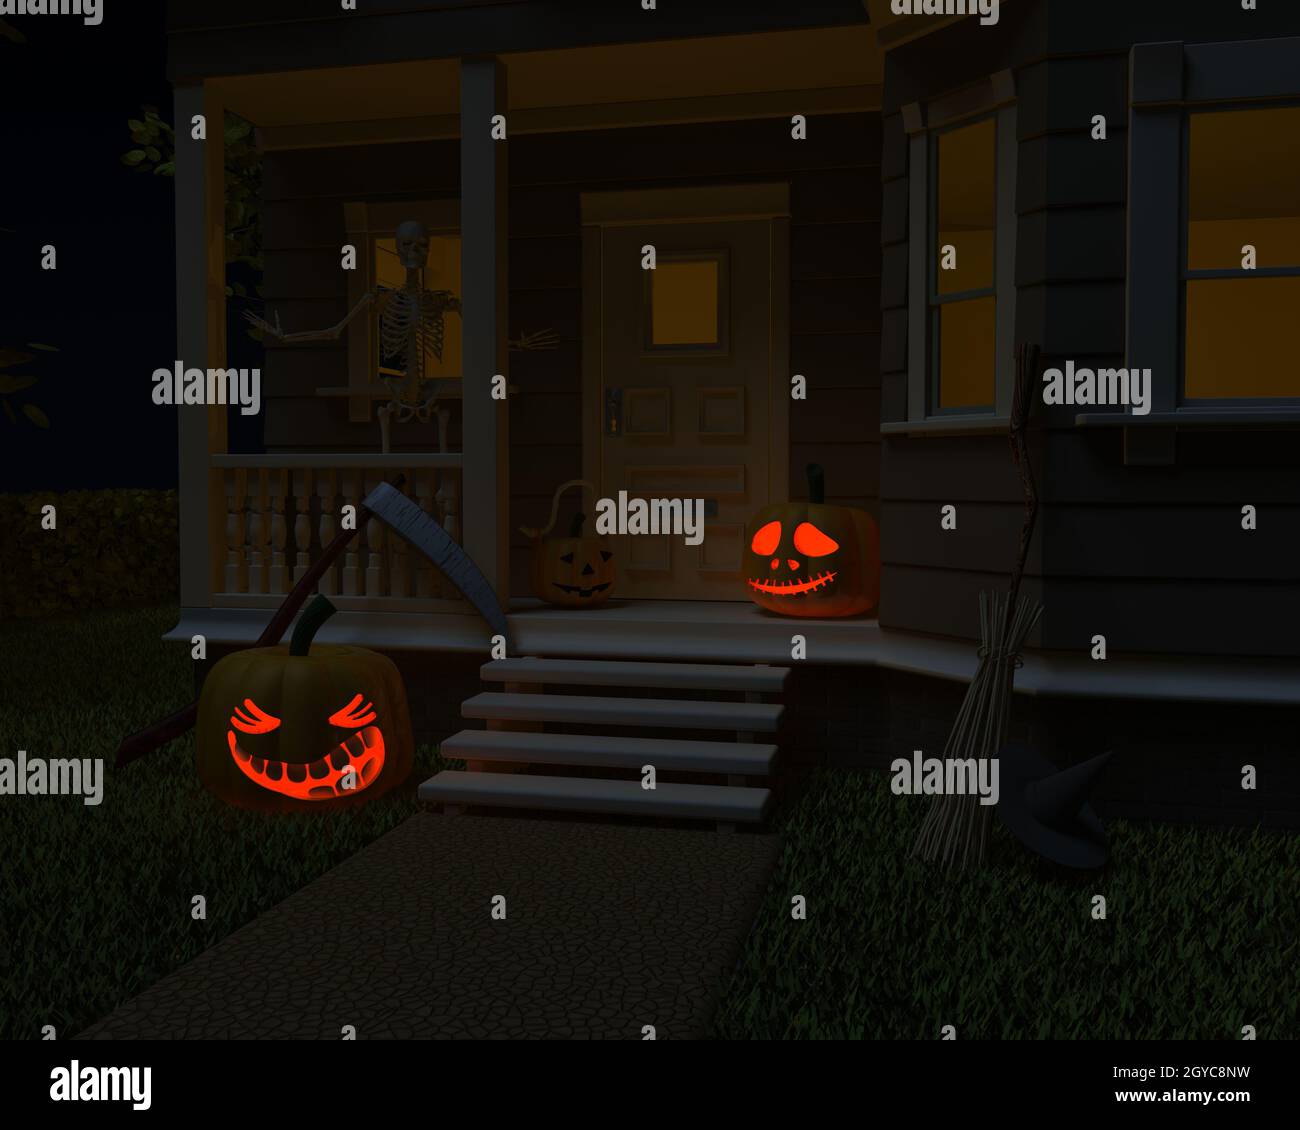 13 Halloween Bloxburg ideas  halloween house, halloween, house